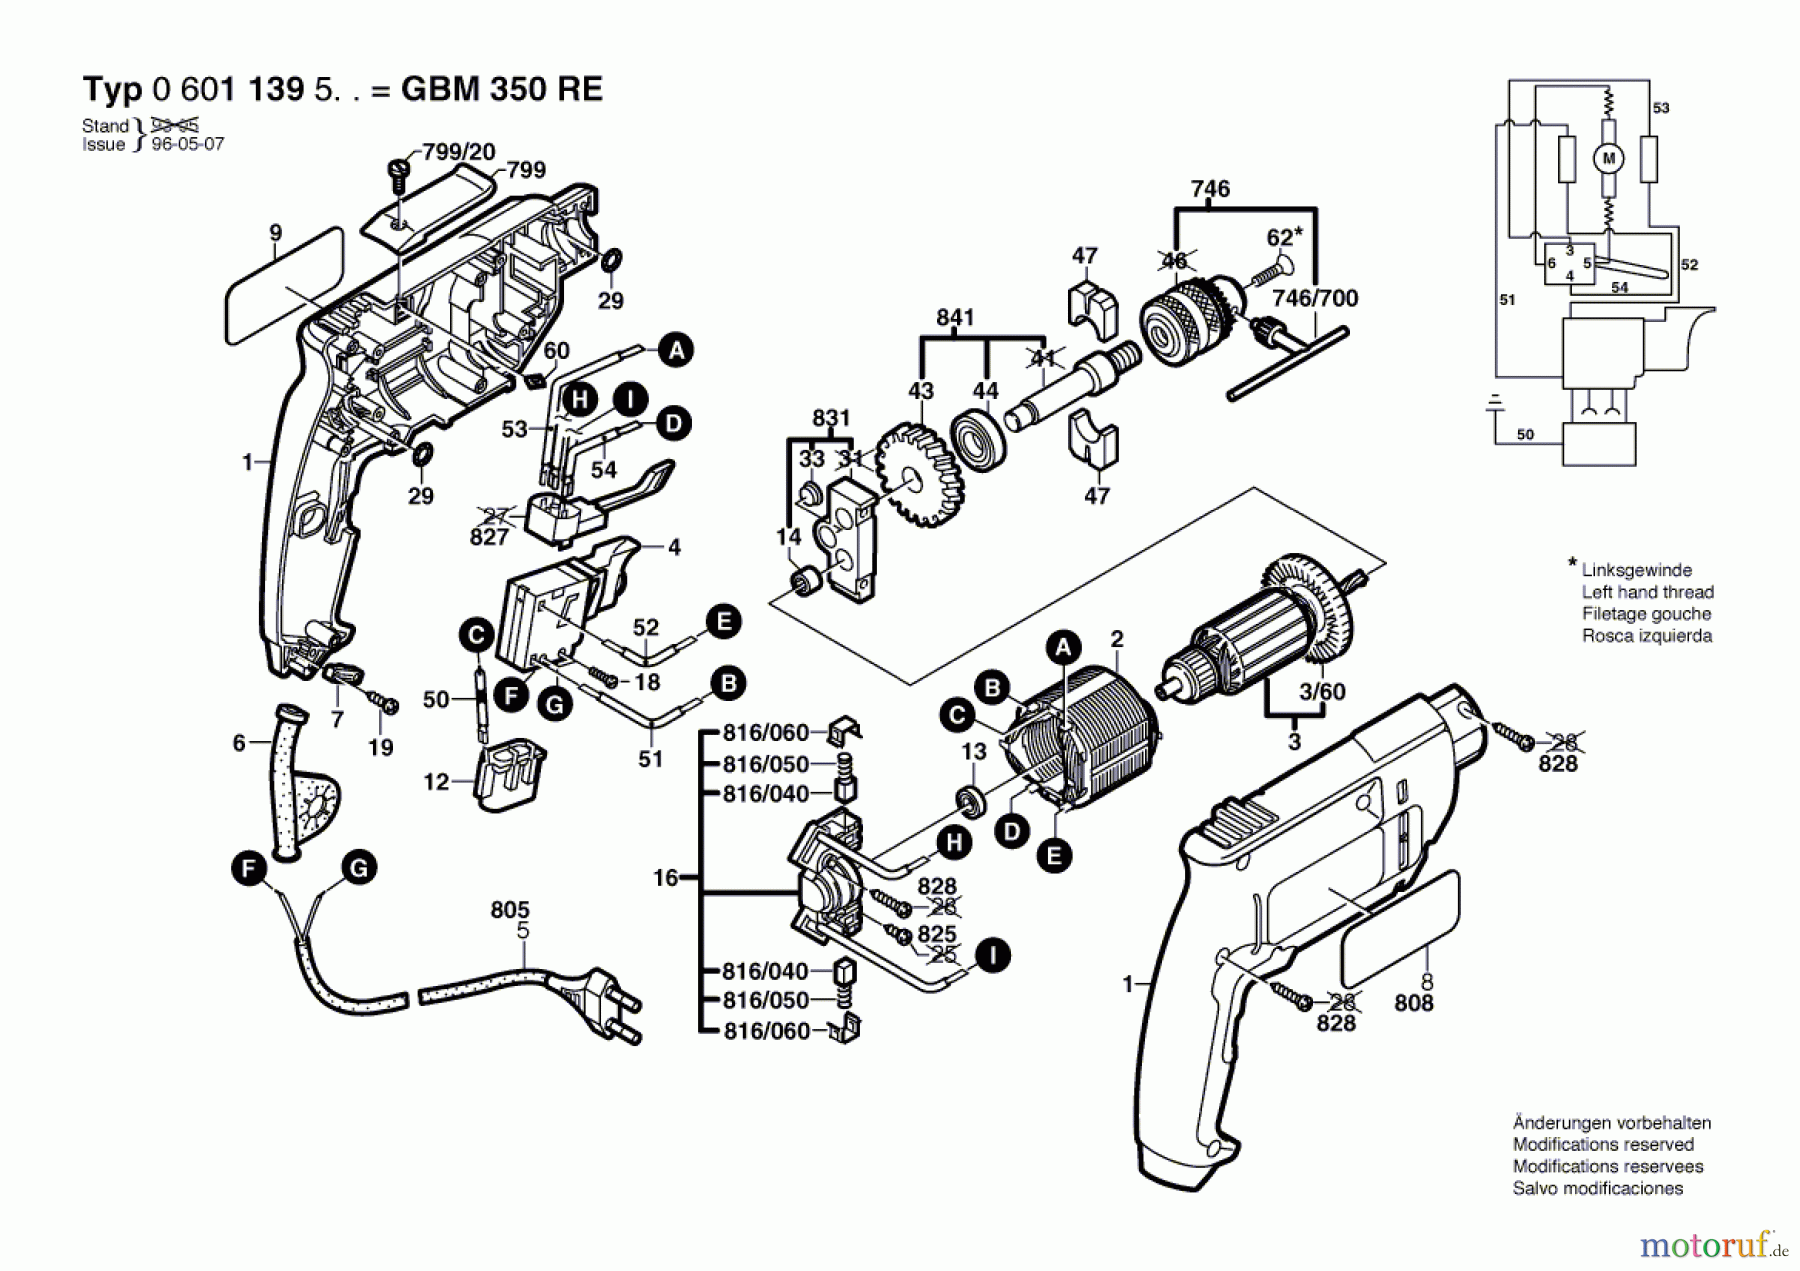  Bosch Werkzeug Bohrmaschine GBM 350 RE Seite 1